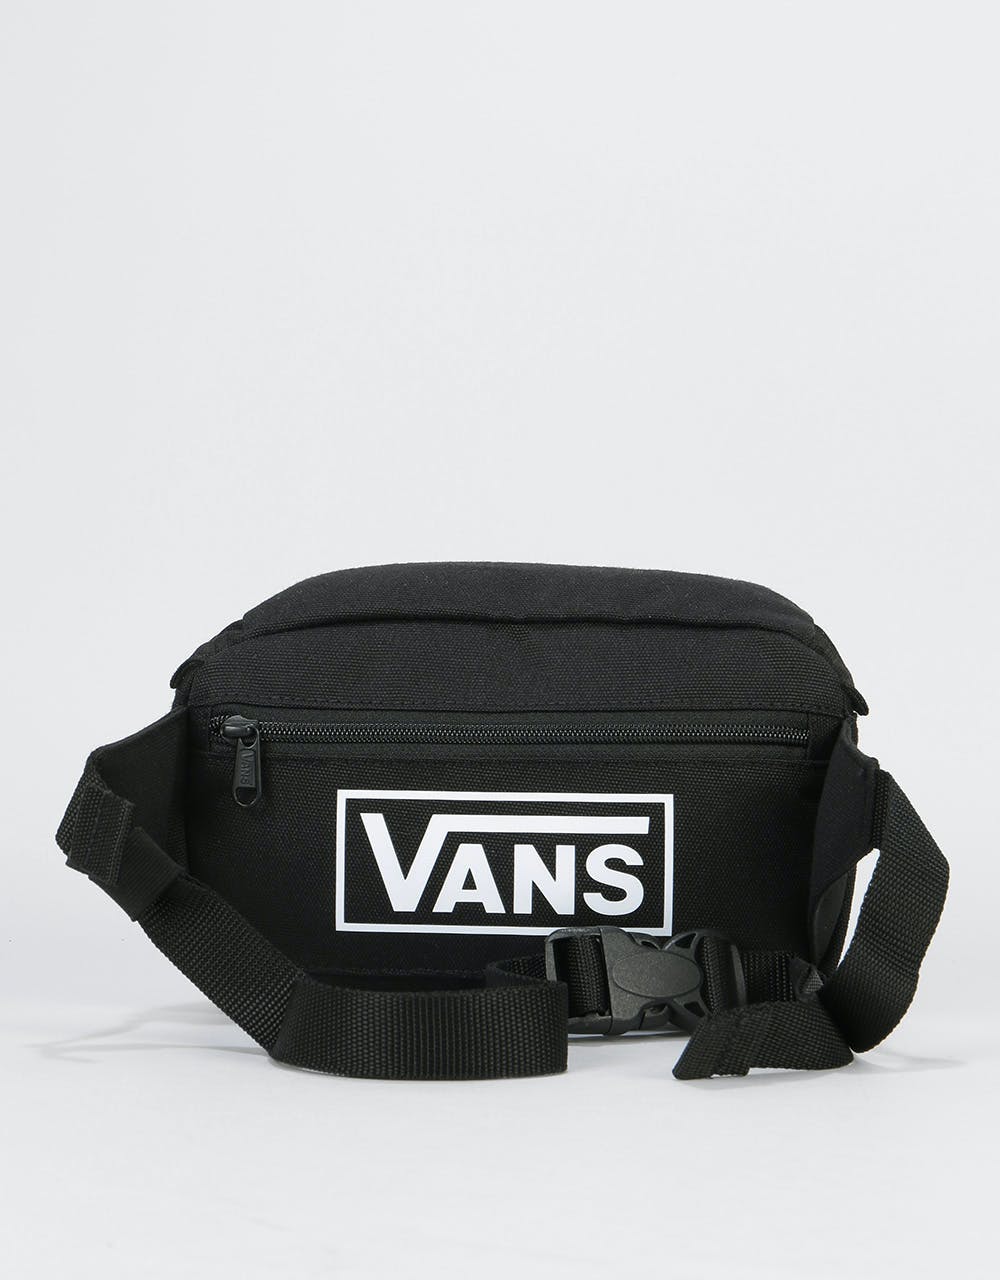 Vans Aliso Cross Body Bag - Vans Black/White